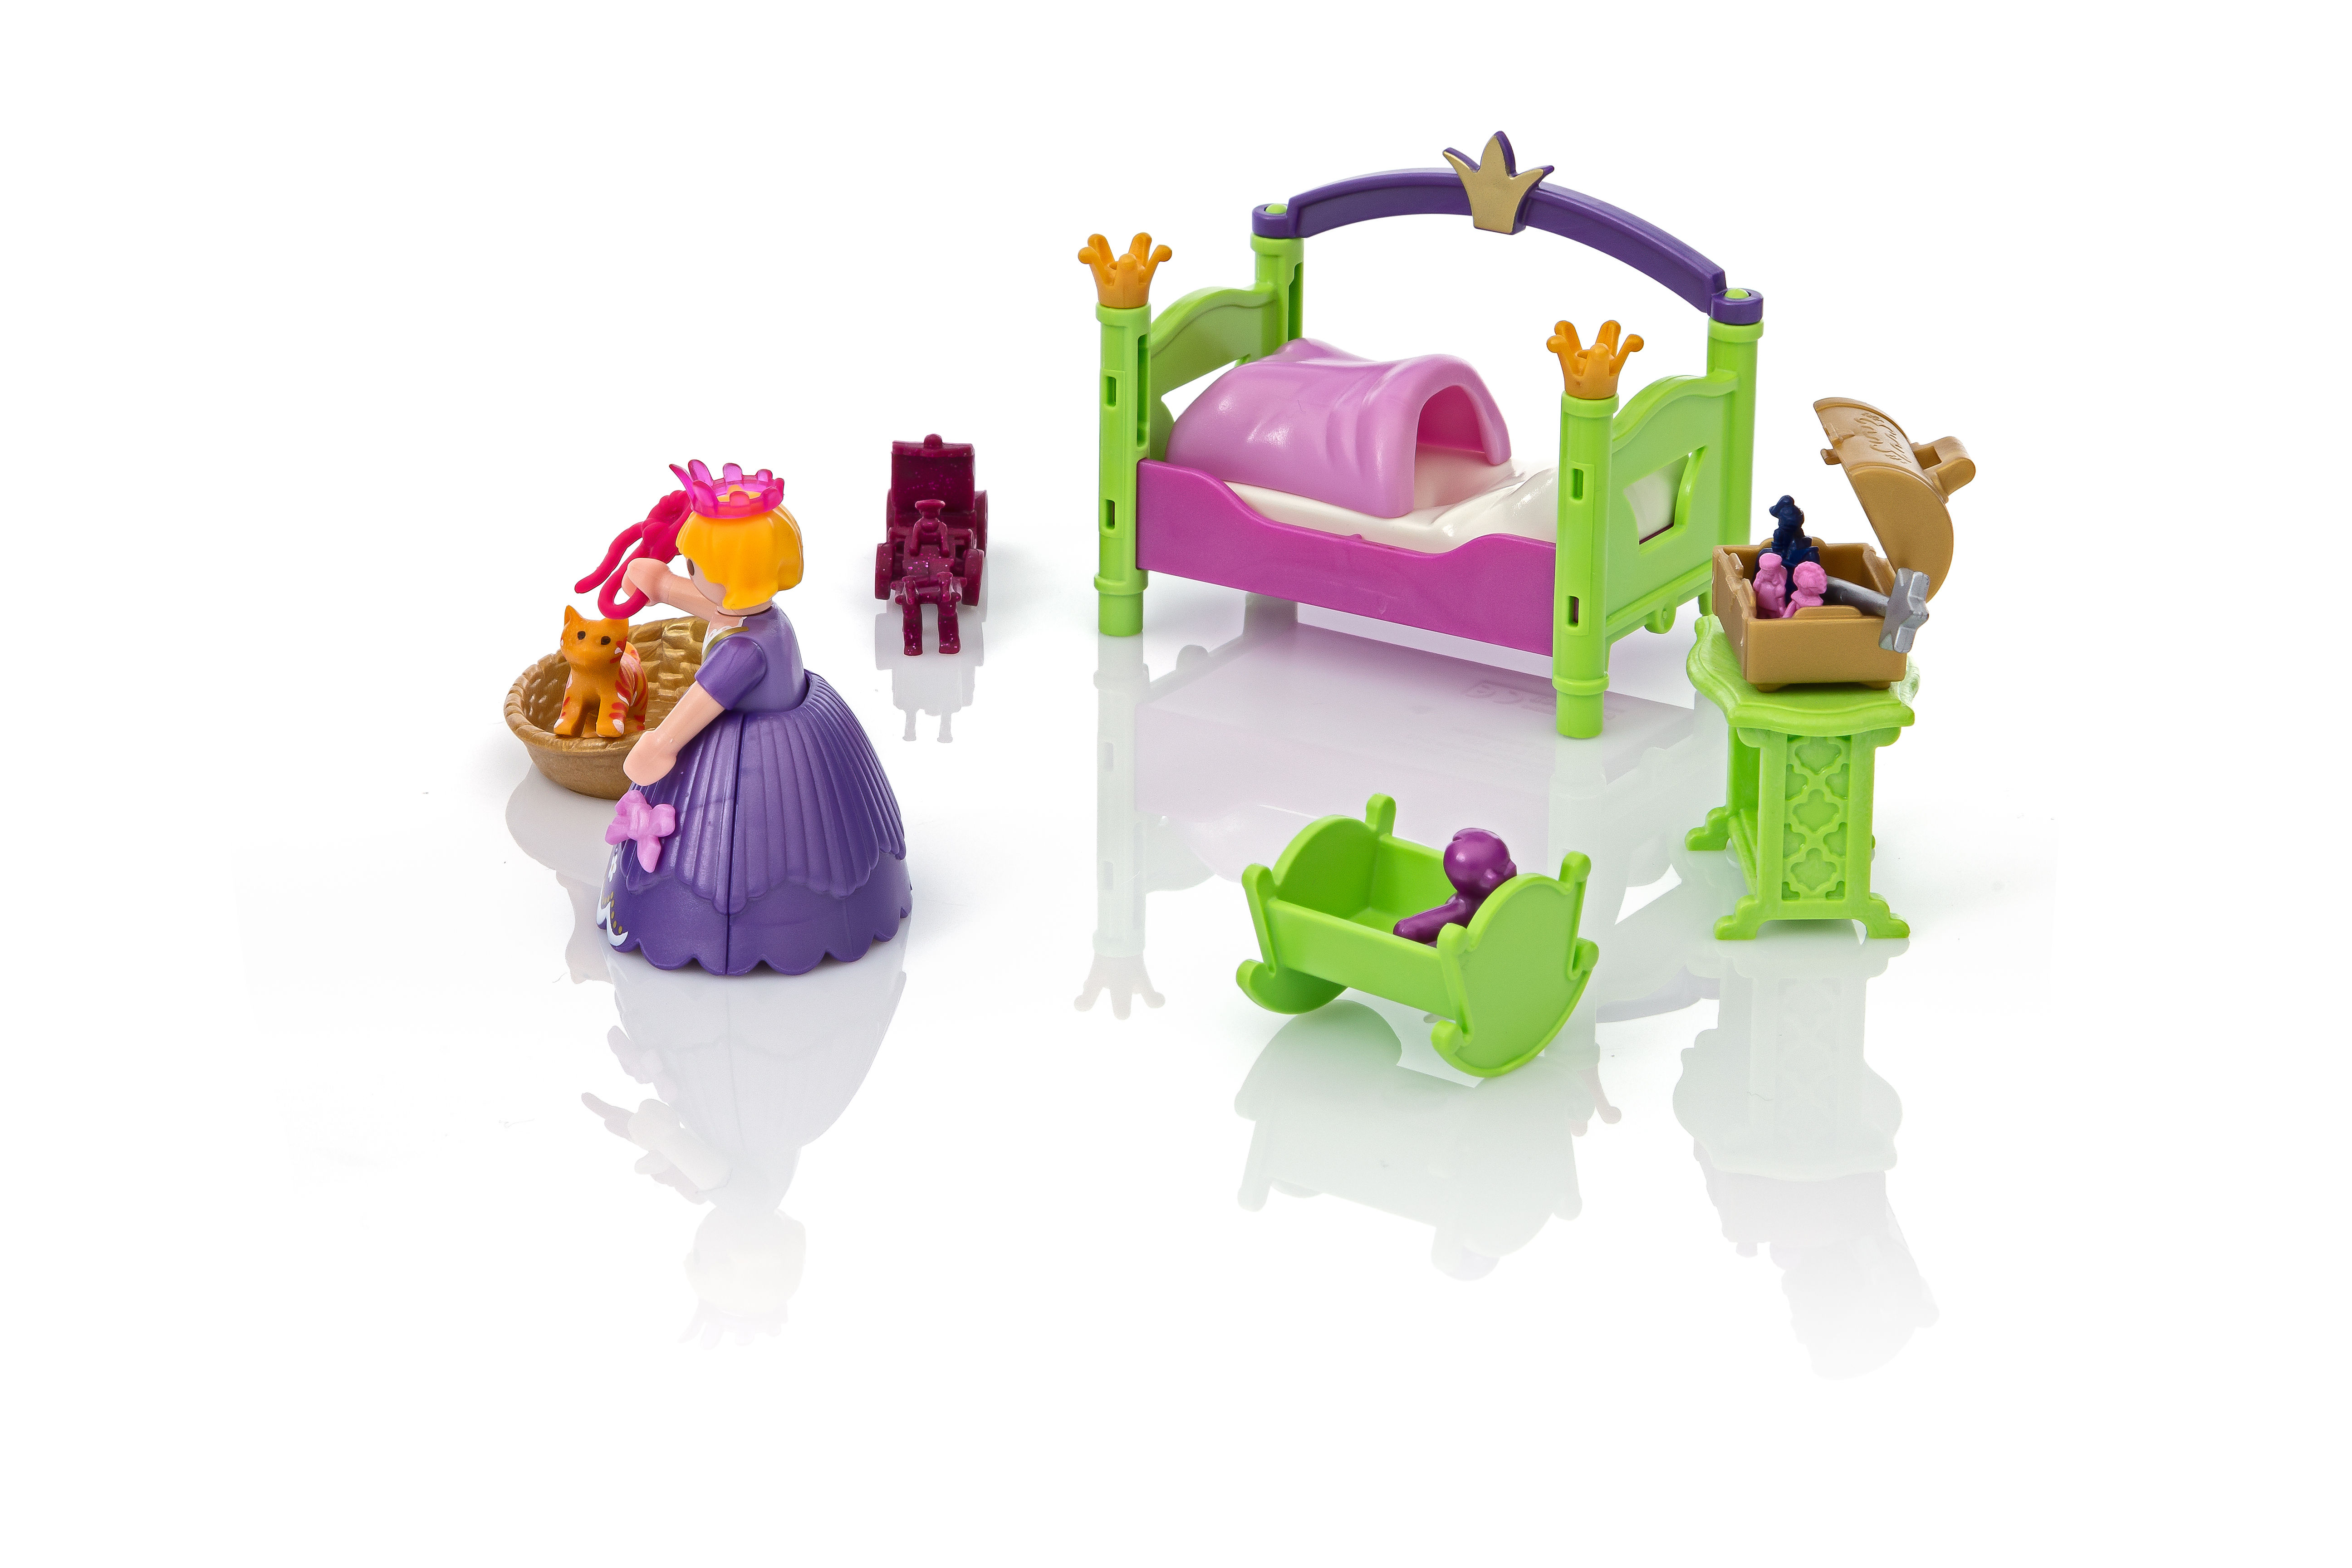 Playmobil 6852 Chambre de Princesse : No Name: : Jeux et Jouets